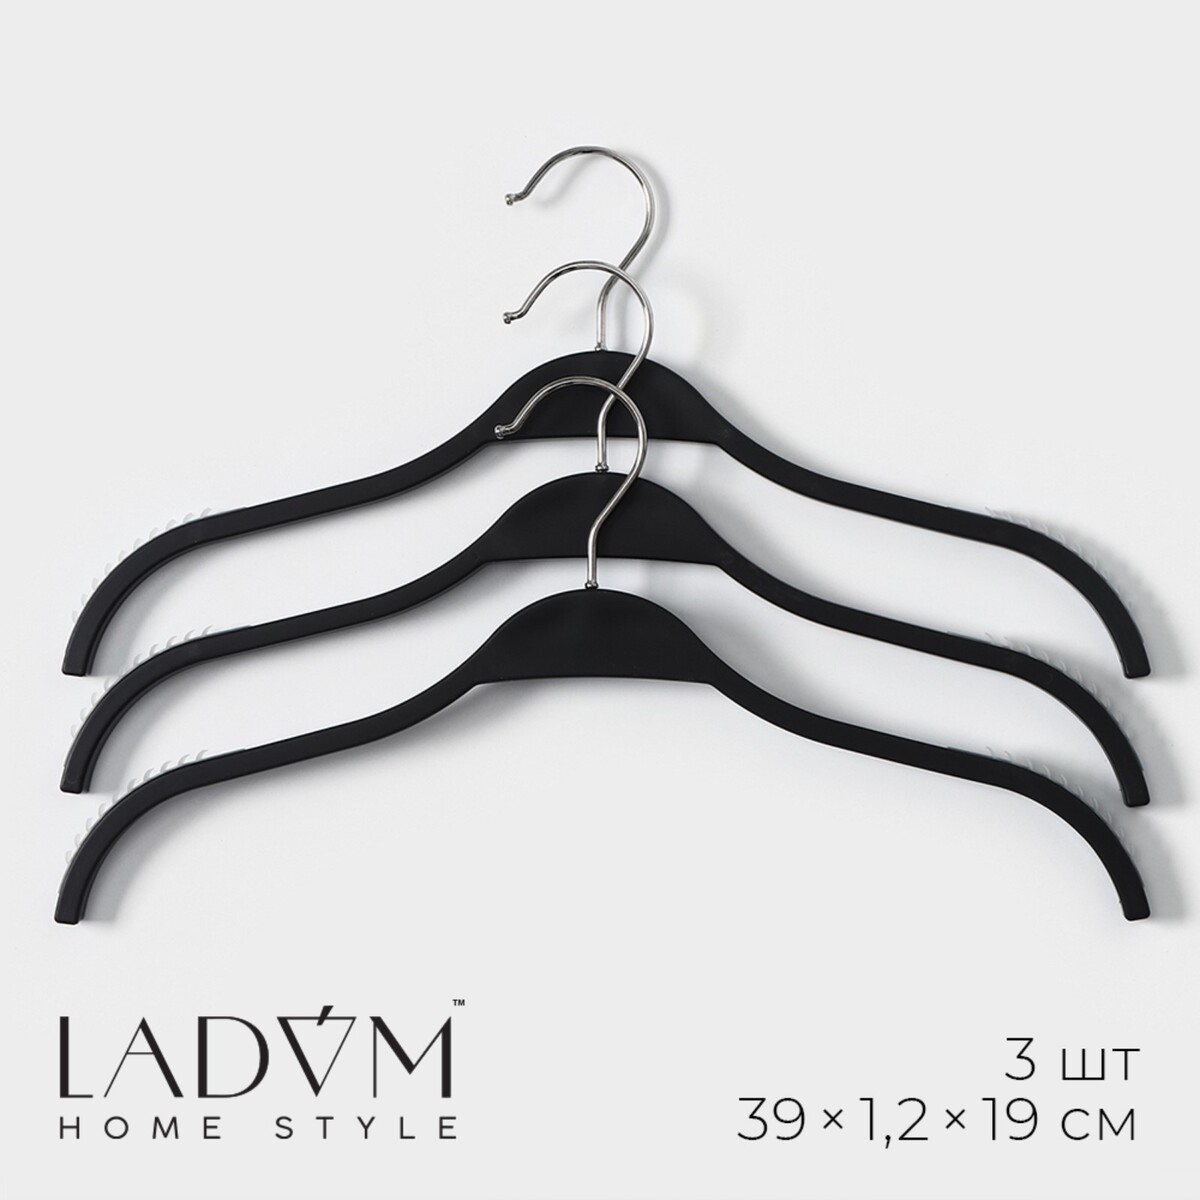 Плечики - вешалки для одежды ladо́m с антискользящей силиконовой вставкой, 39×1,2×19 см, 3 шт, цвет черный